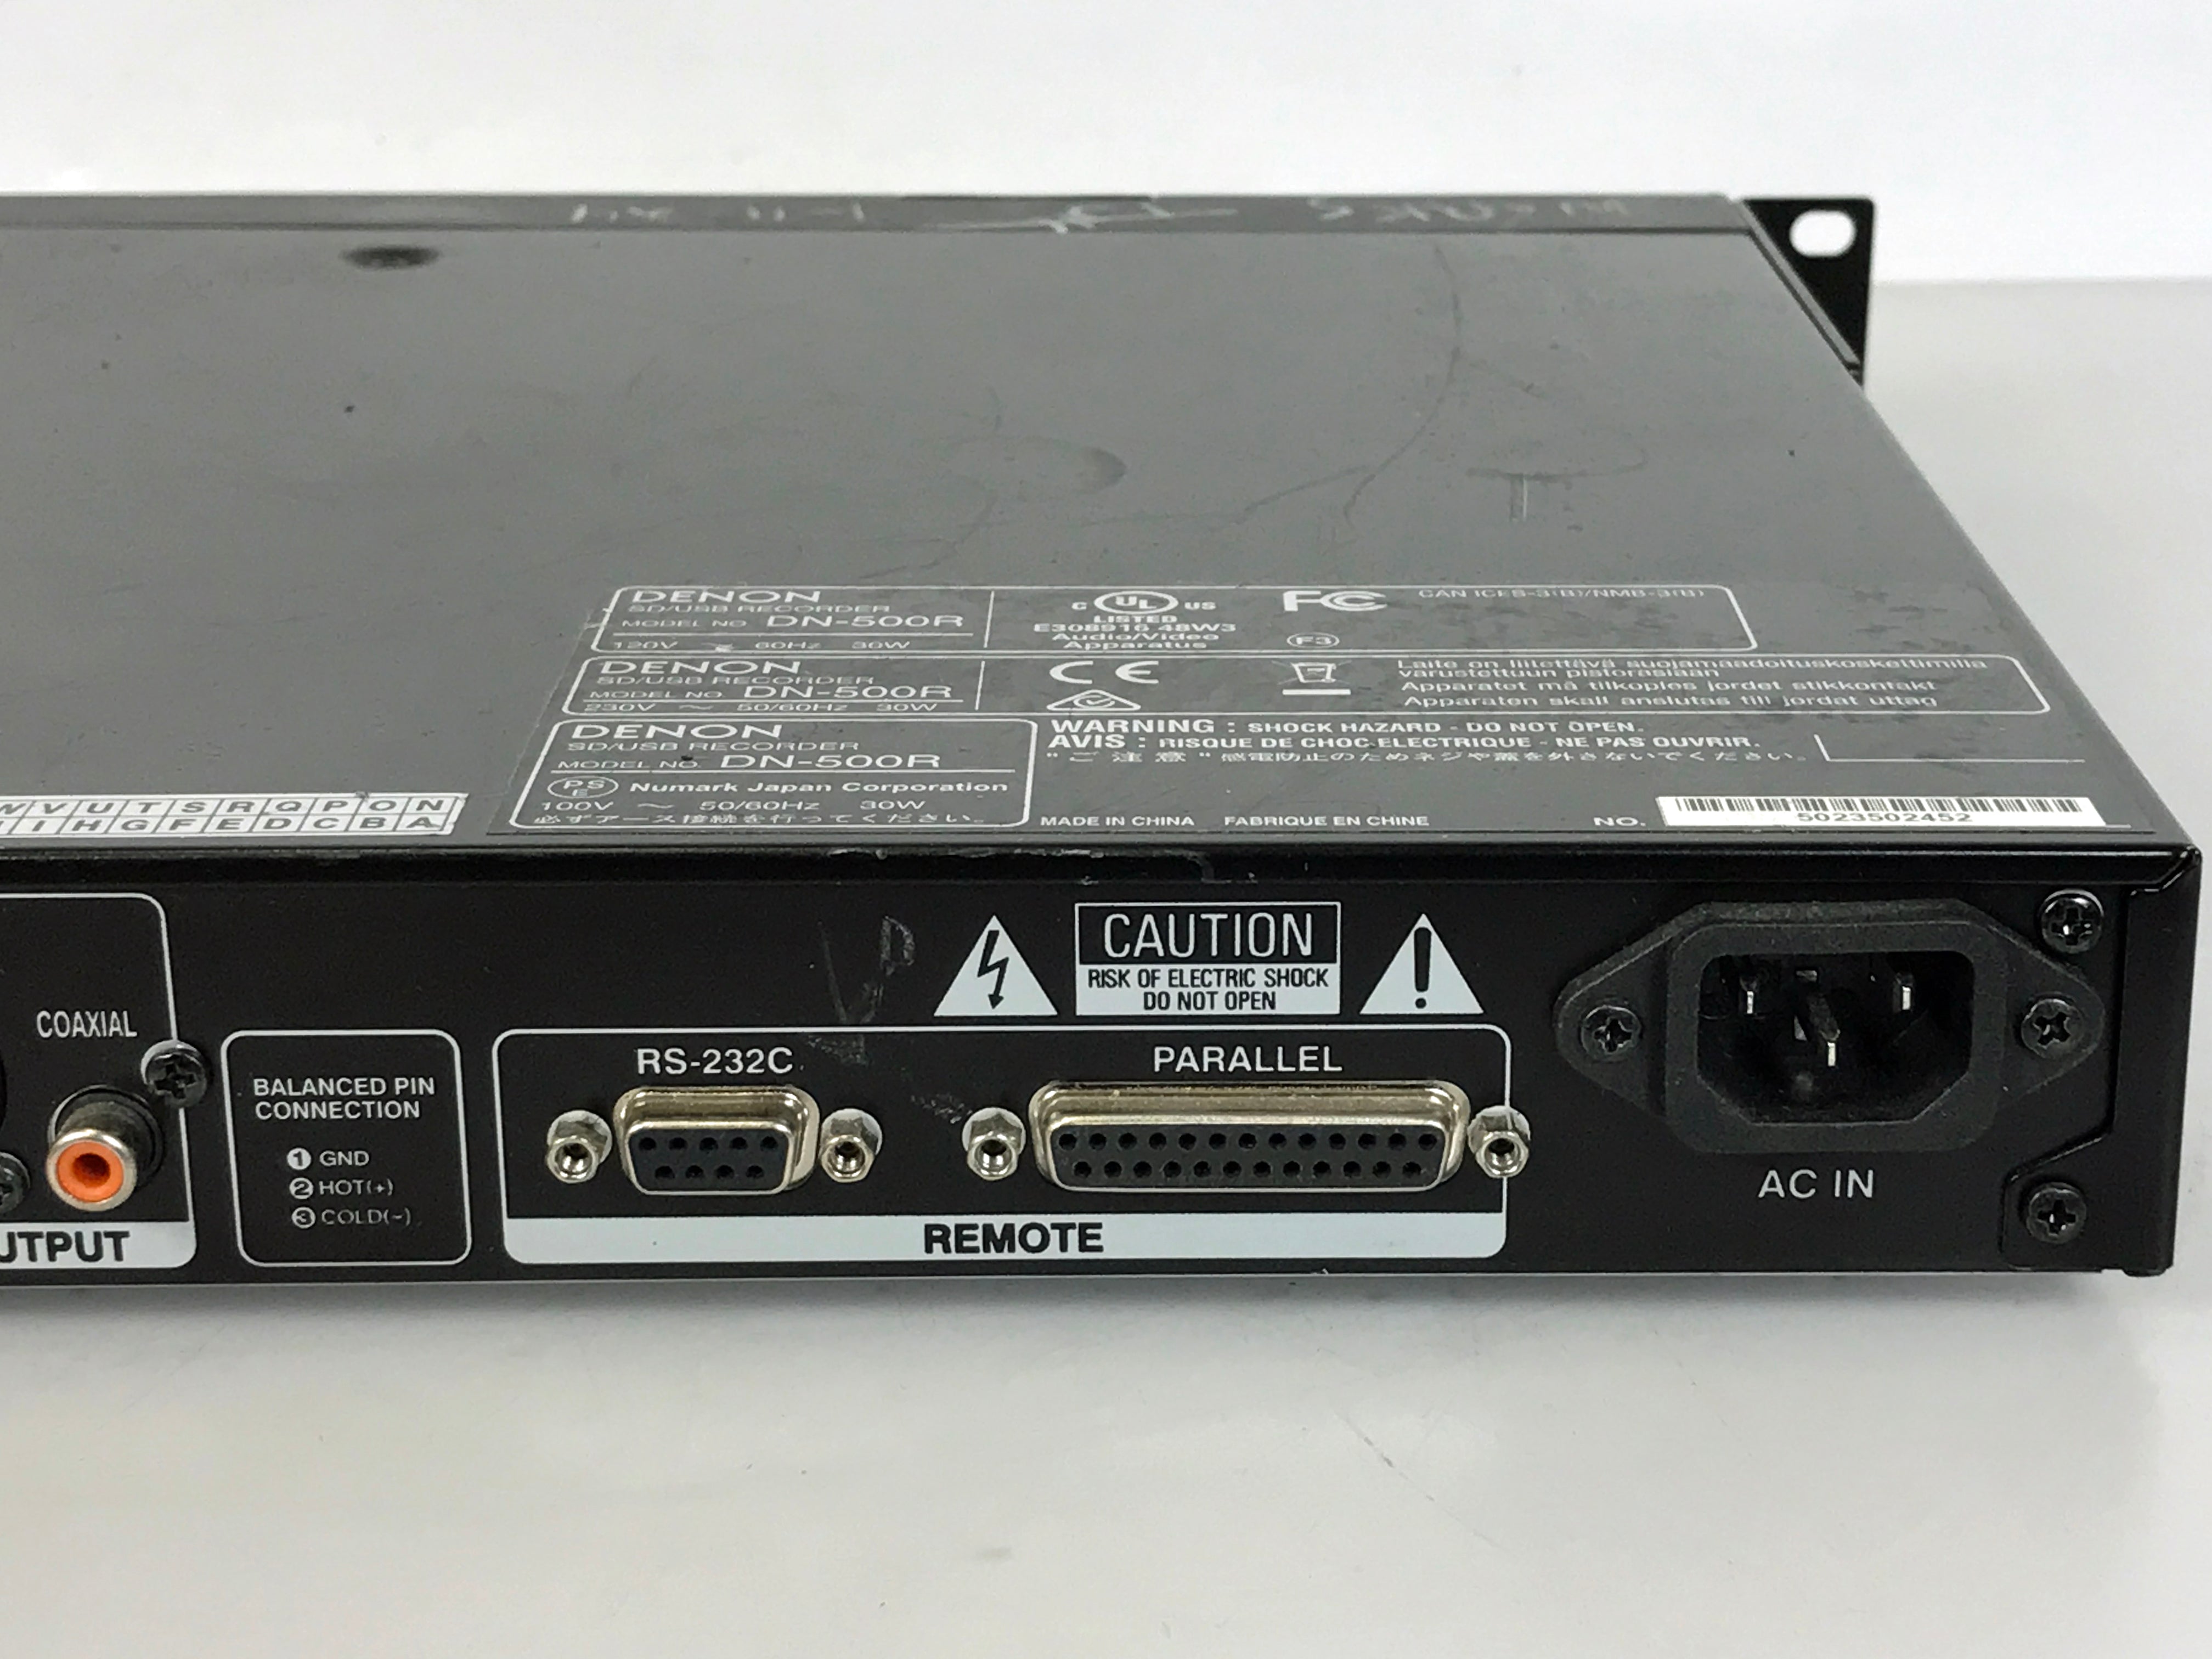 Denon DN-500R SD/USB 1U Audio Recorder